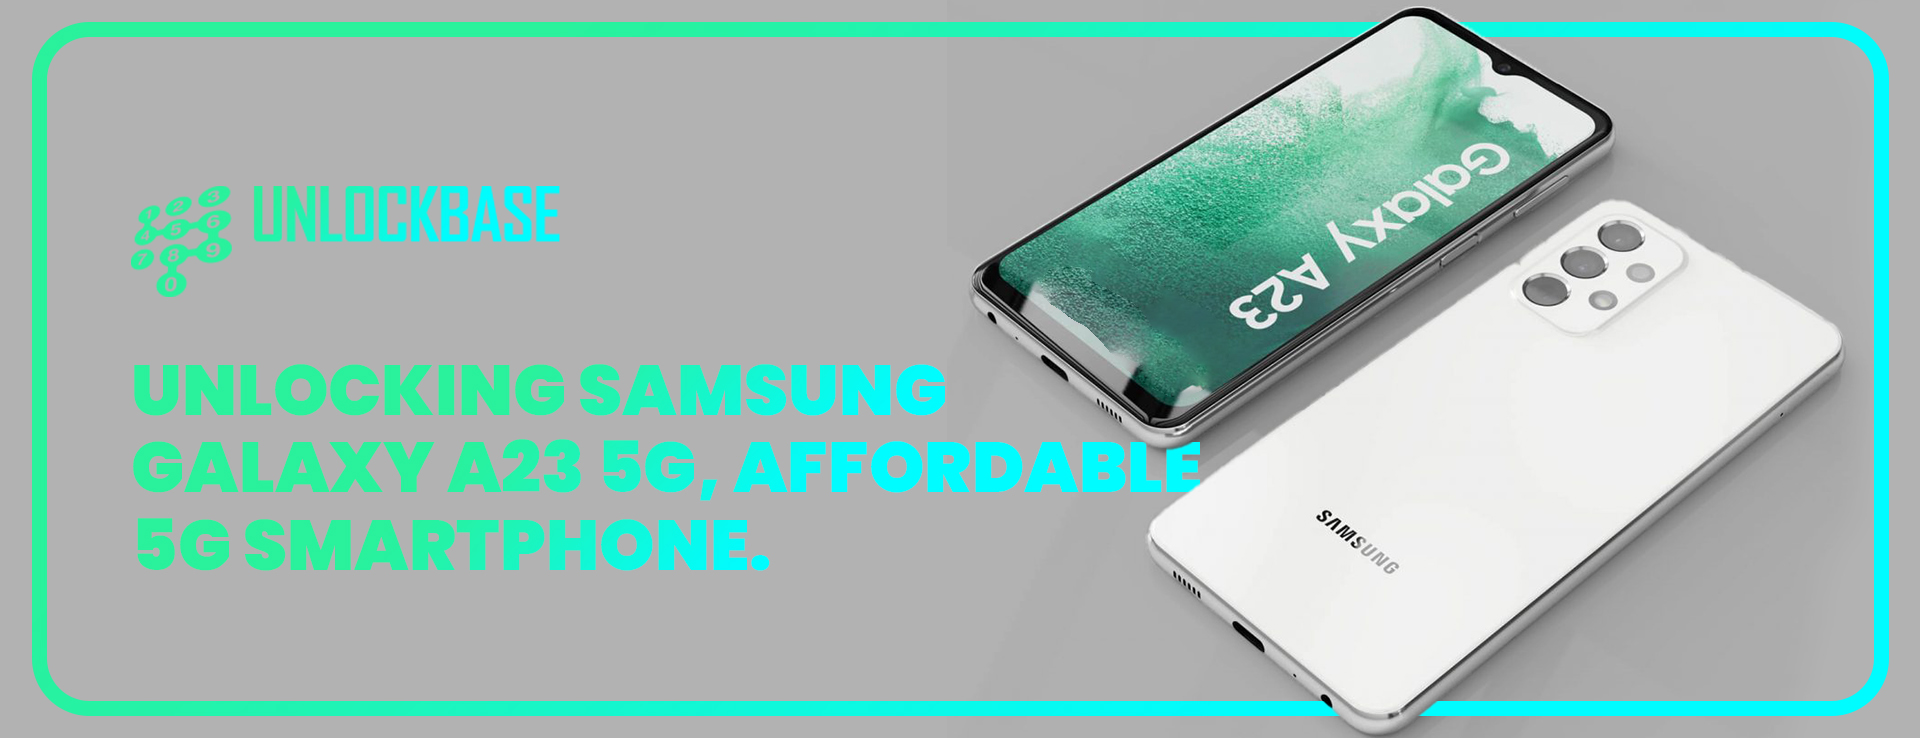 Smartphone Samsung Galaxy A23 com 5G em promoção